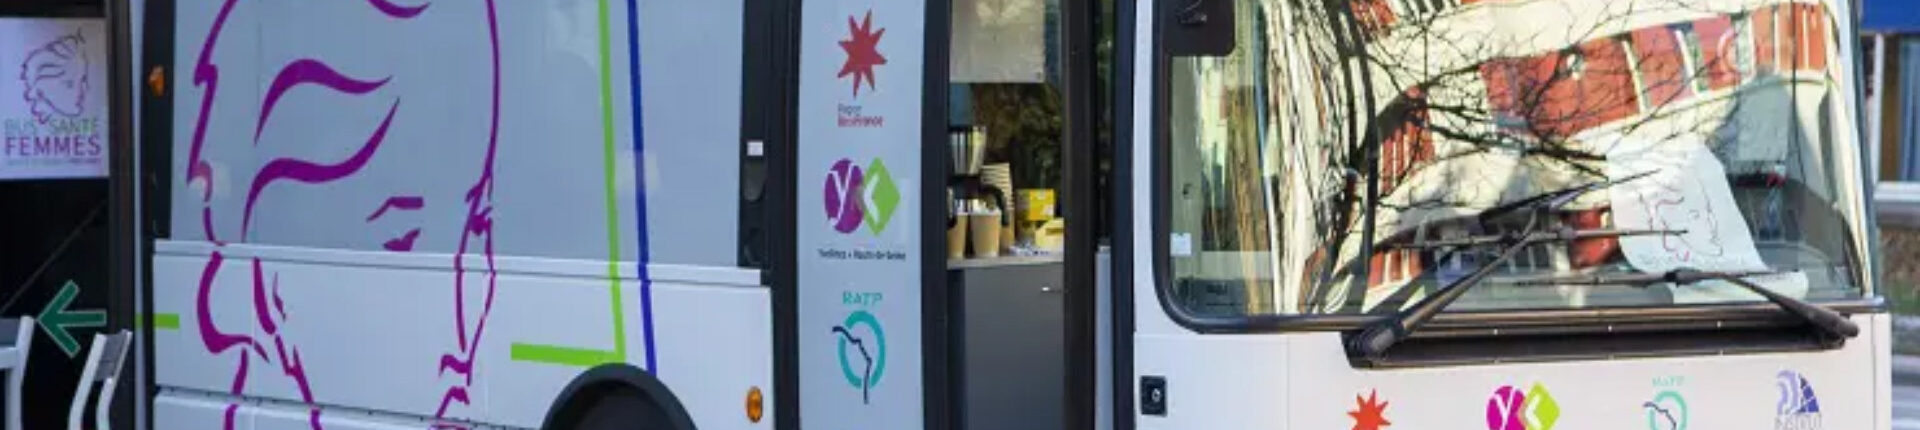 Le Bus santé femmes s’installera à Sèvres mercredi 28 juin